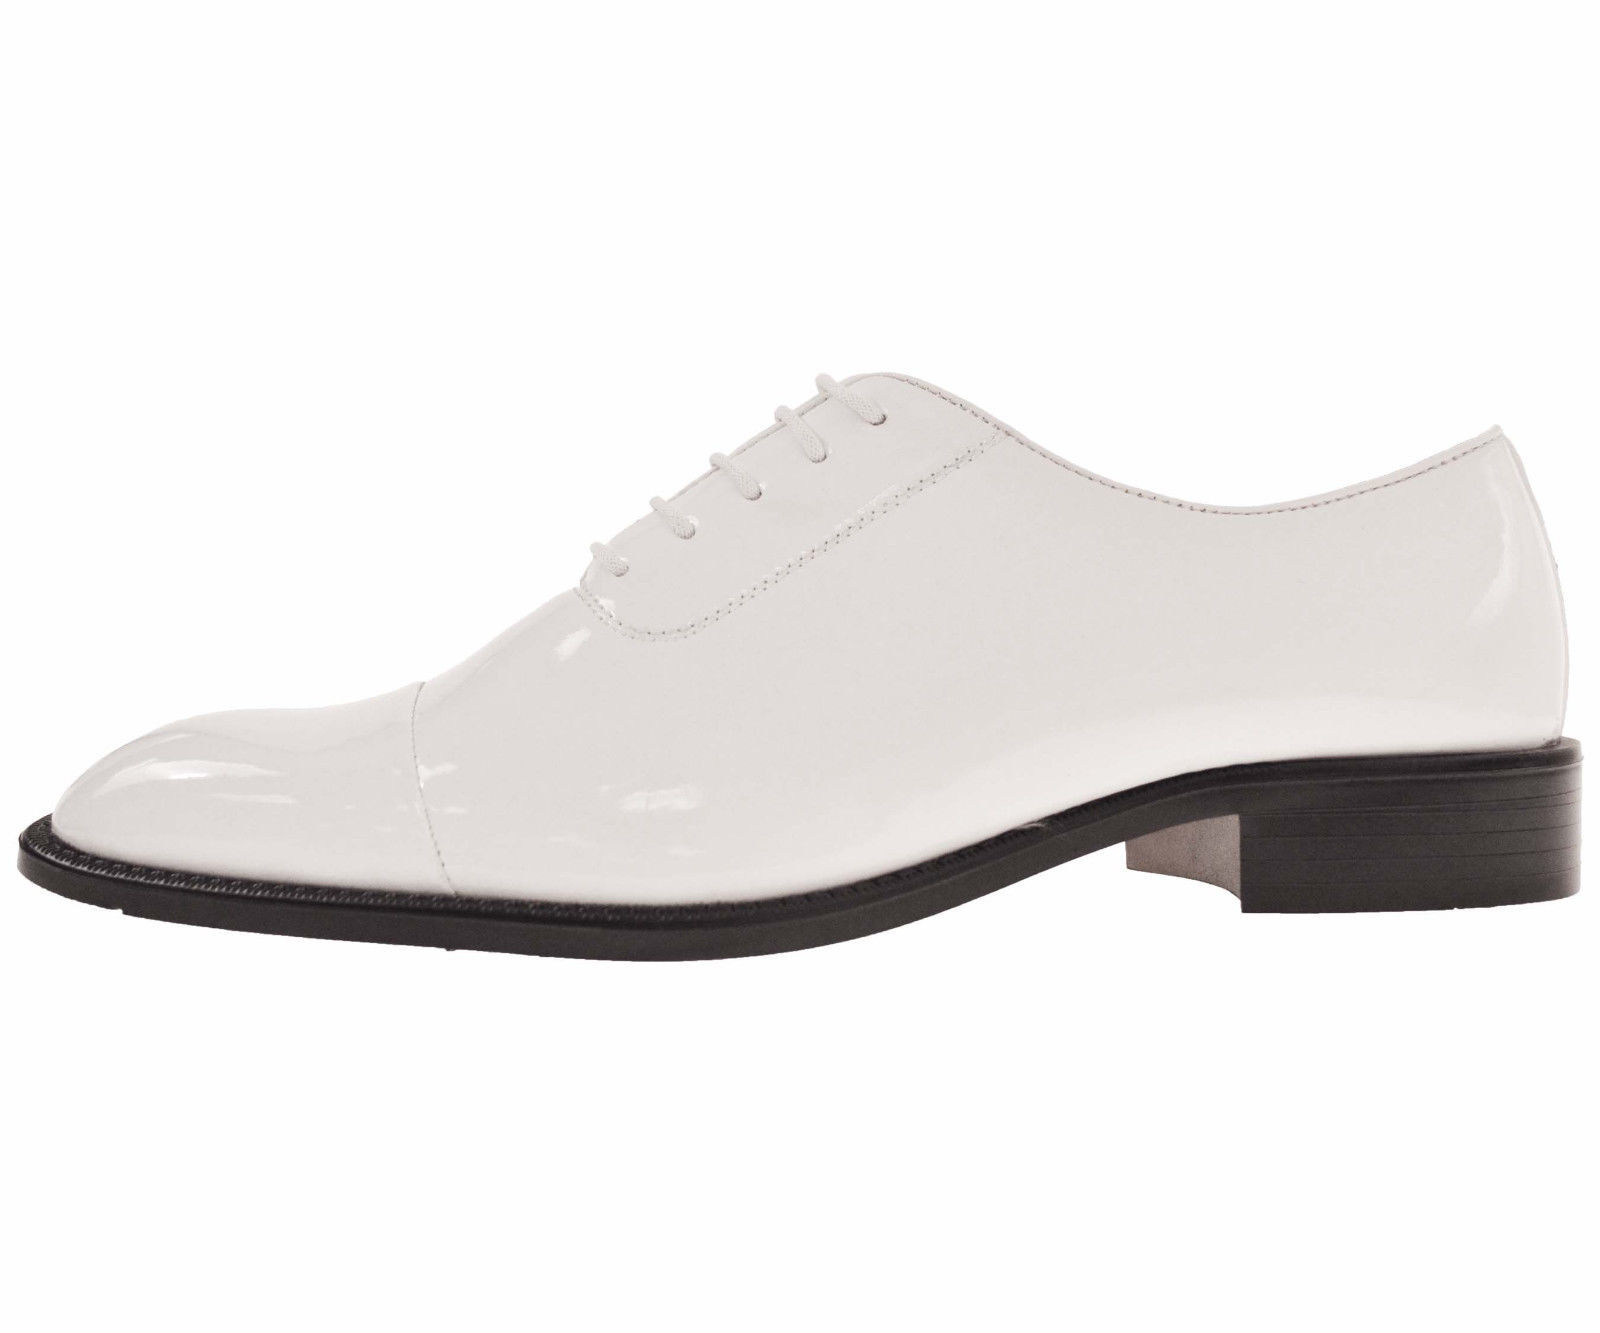 Amali Mens White Patent Cap-Toe Tuxedo Oxford Dress Shoe: 2825-007 ...